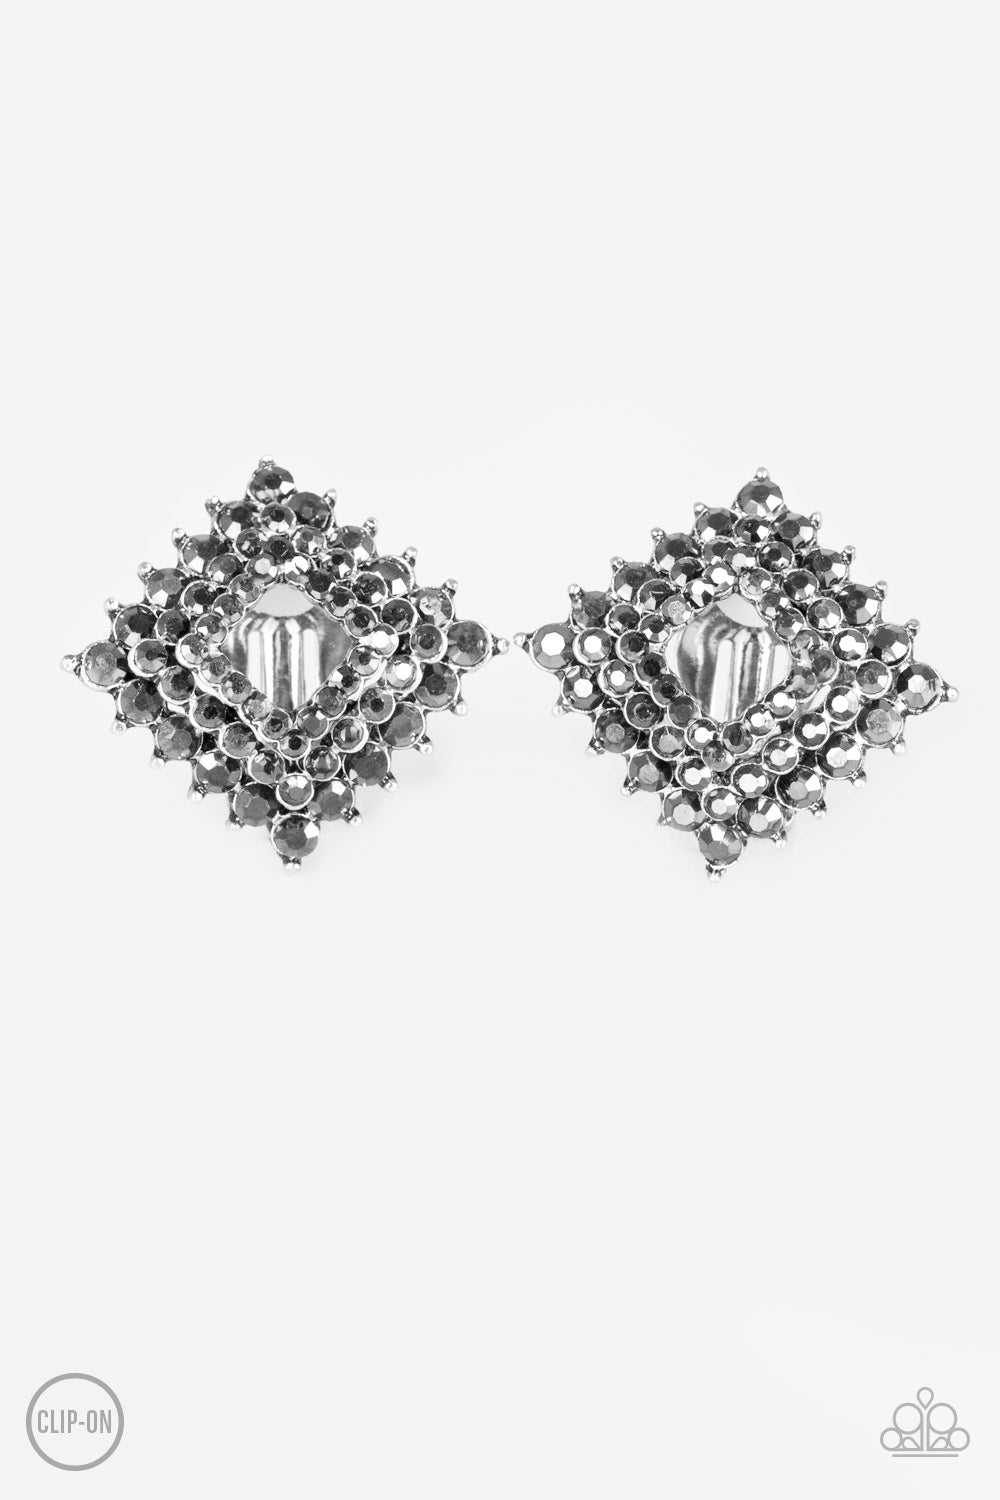 Kensington Keepsake - Silver Clip-On earrings